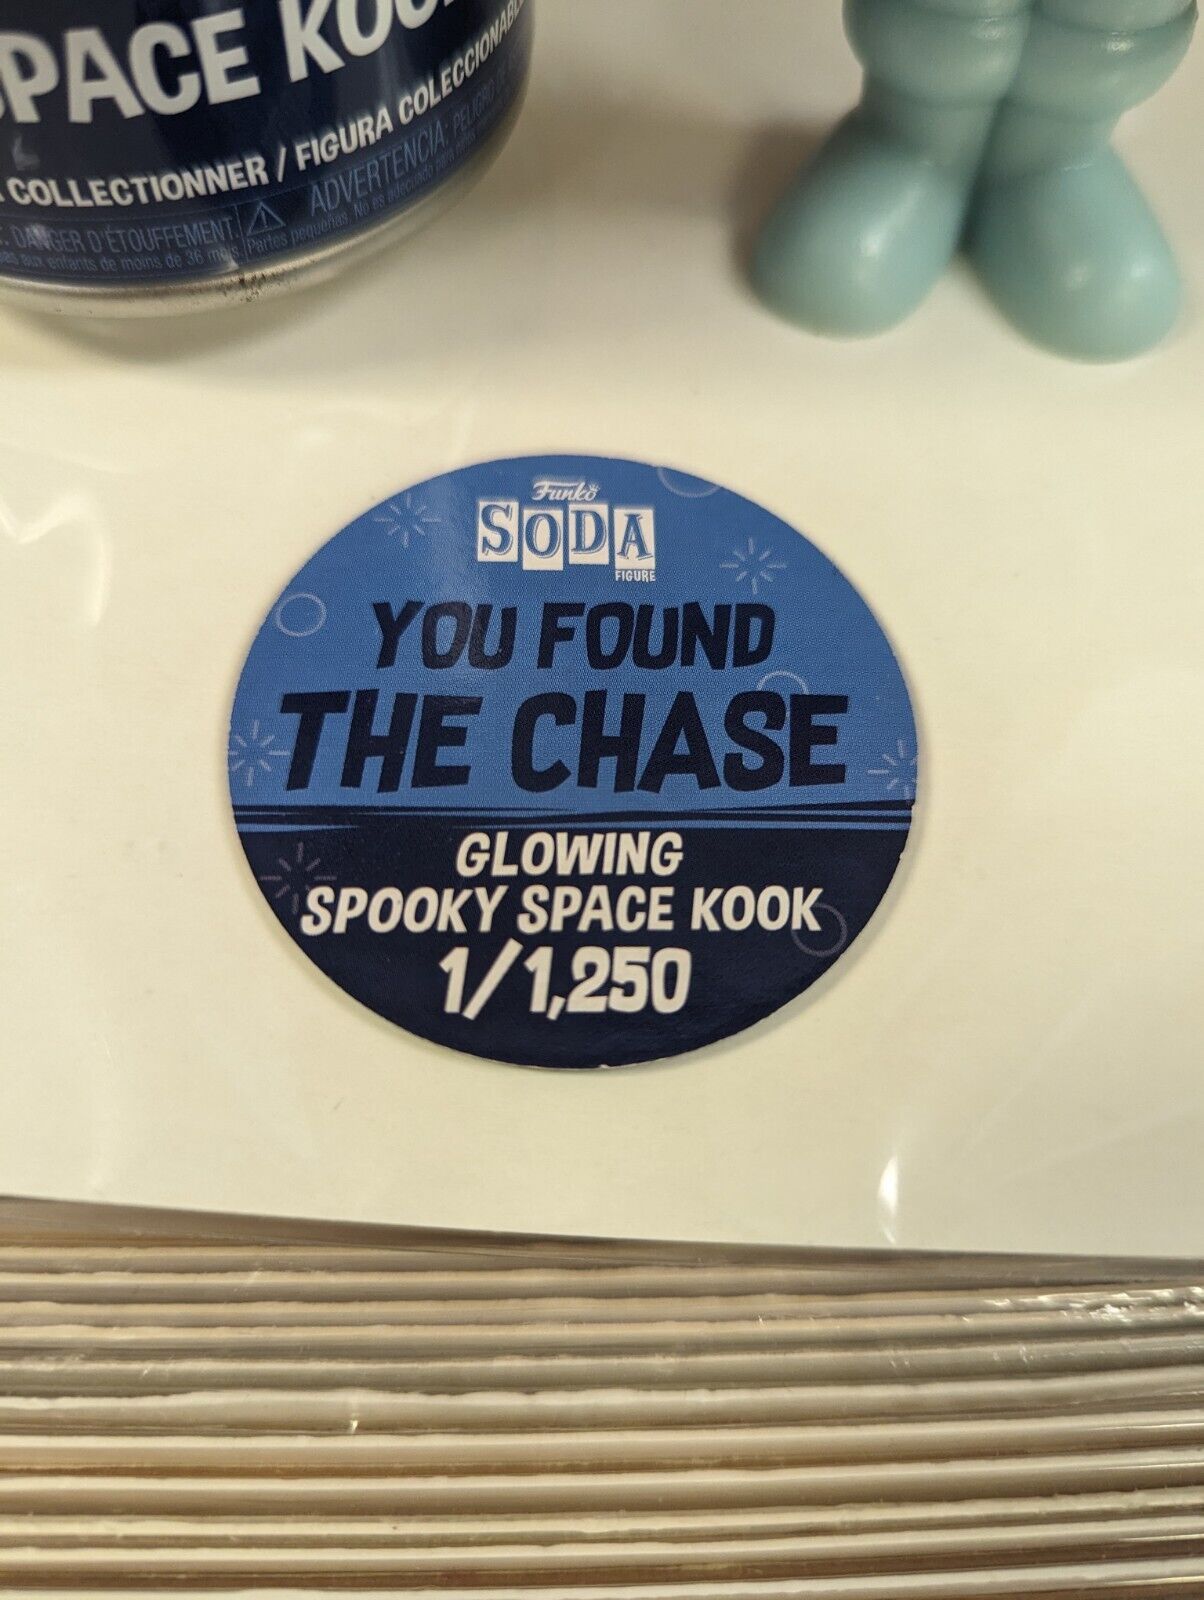 Funko Soda Spooky Space Kook Glowing Chase 1/1250 Scooby Doo